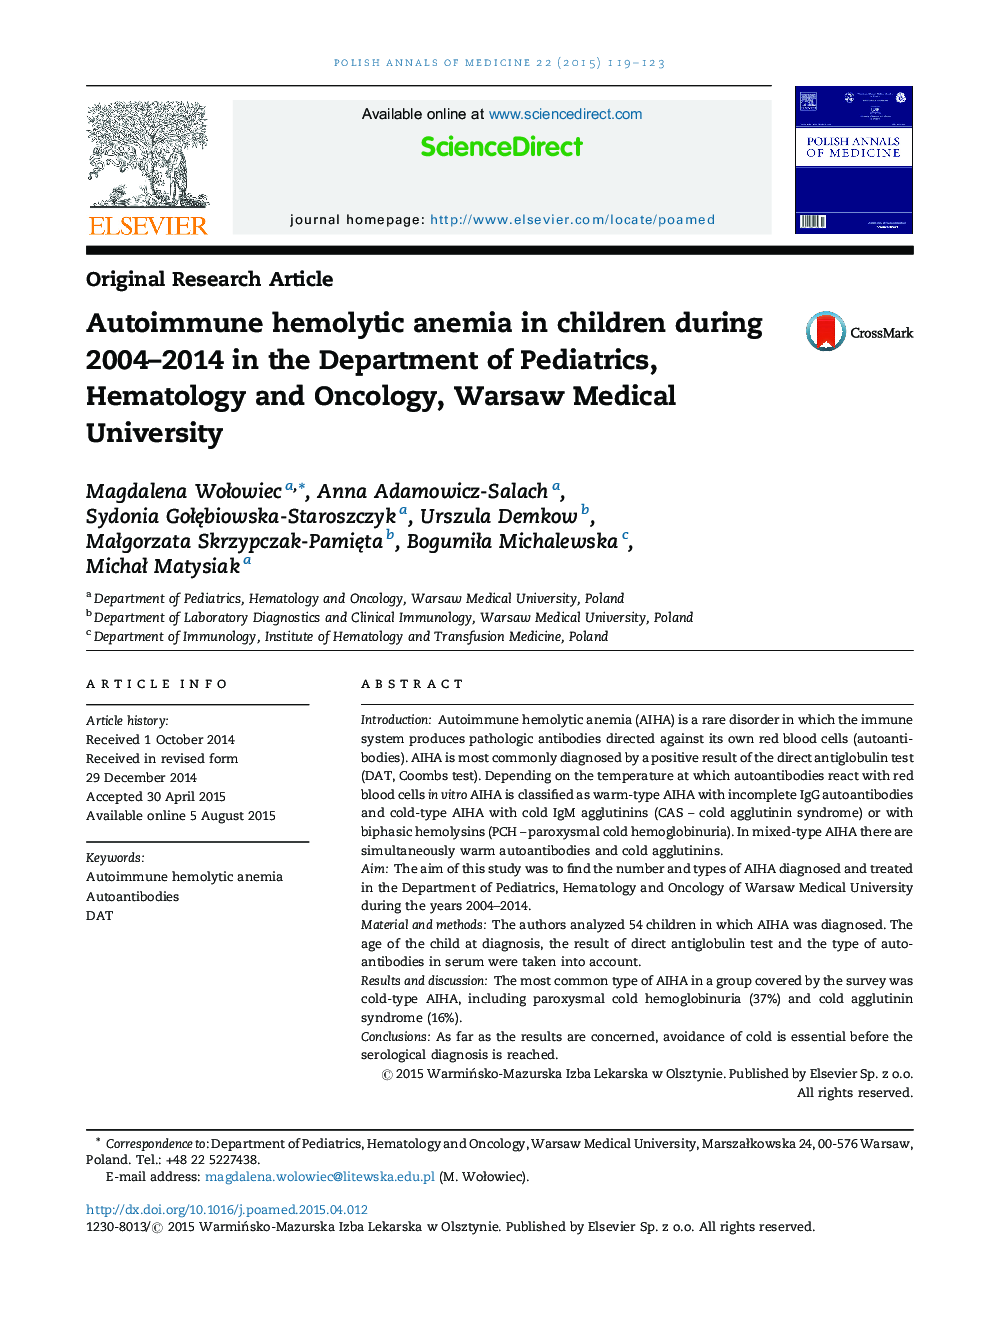 کم خونی همولیتیک خودایمن در کودکان در طول 2004-2014 در گروه اطفال، هماتولوژی و انکولوژی، دانشگاه علوم پزشکی ورشو